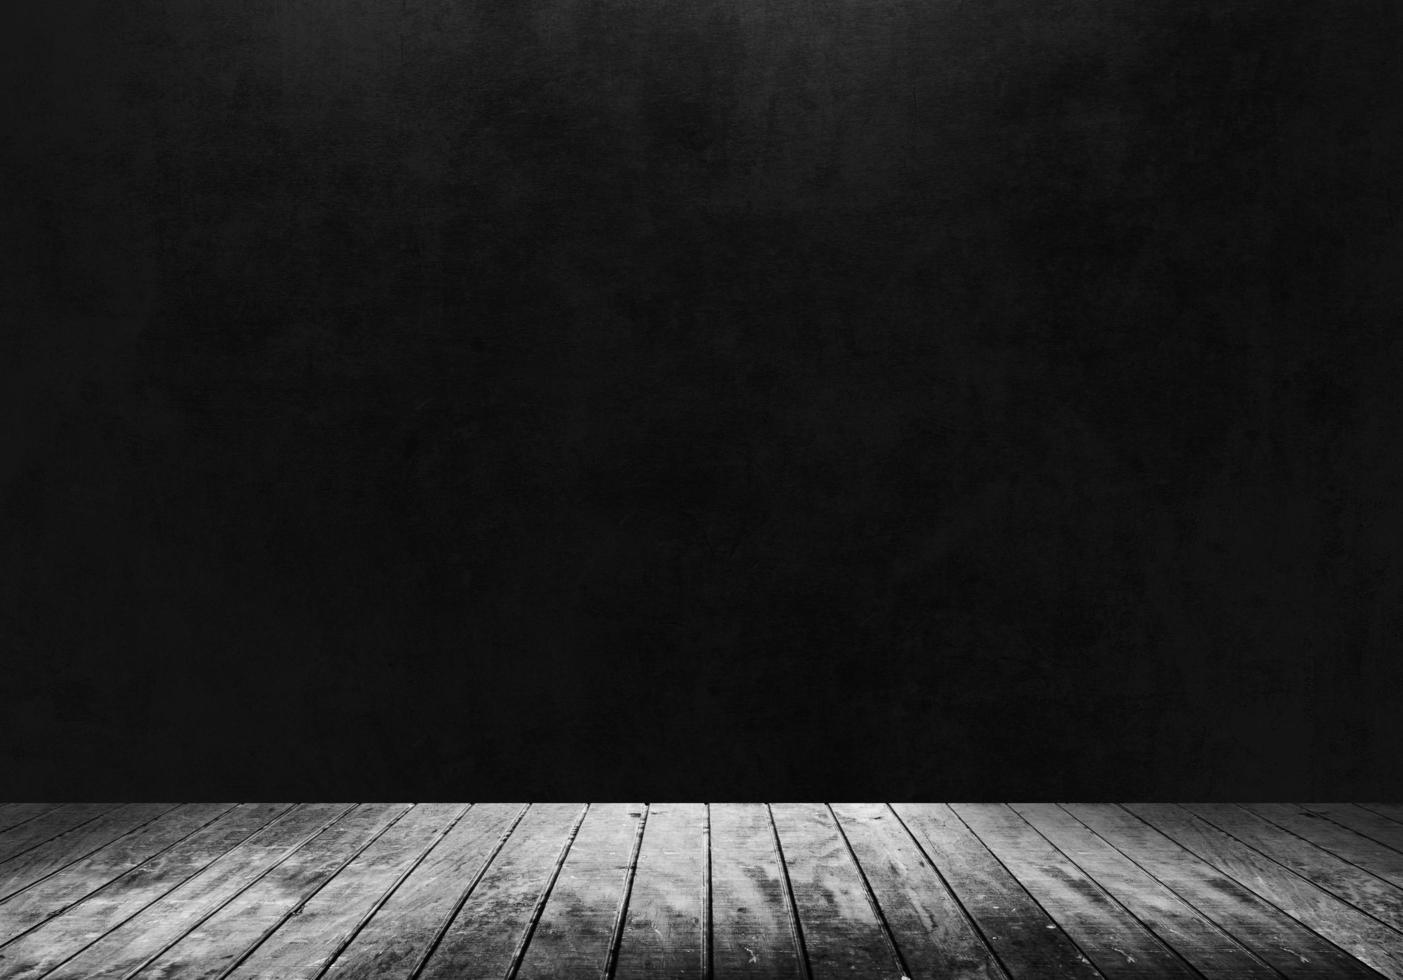 Wooden floor with dark background photo